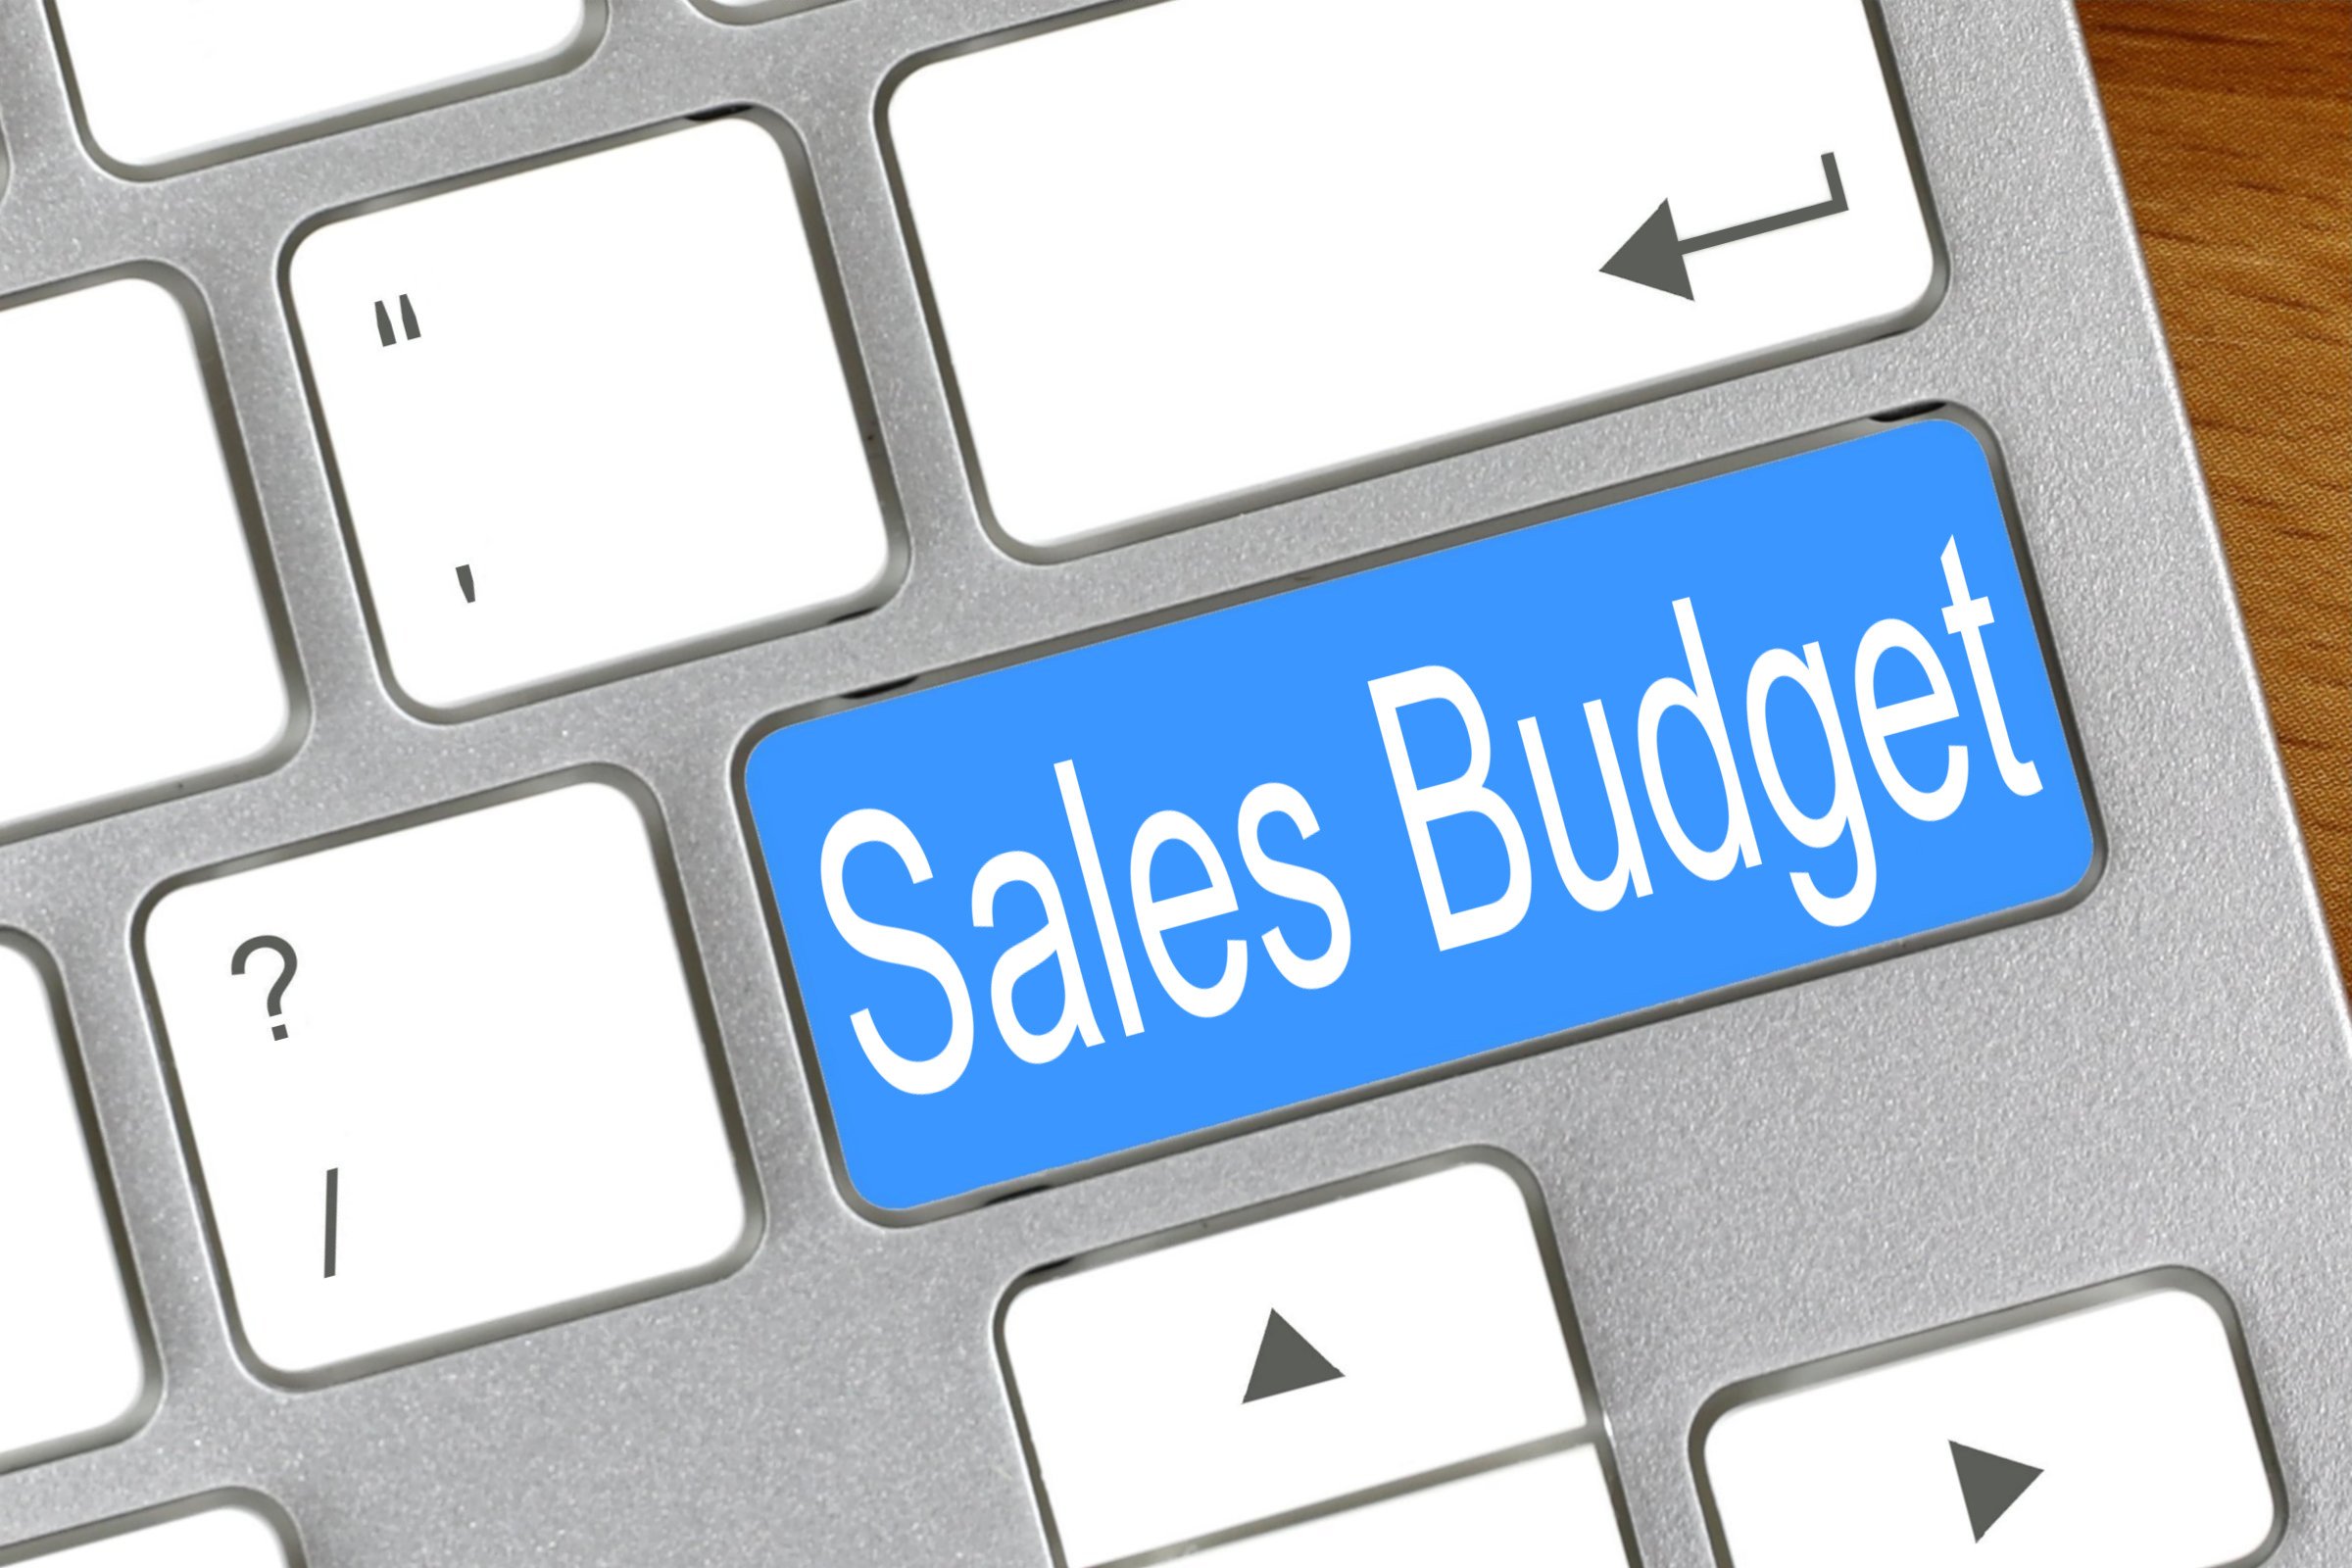 sales budget